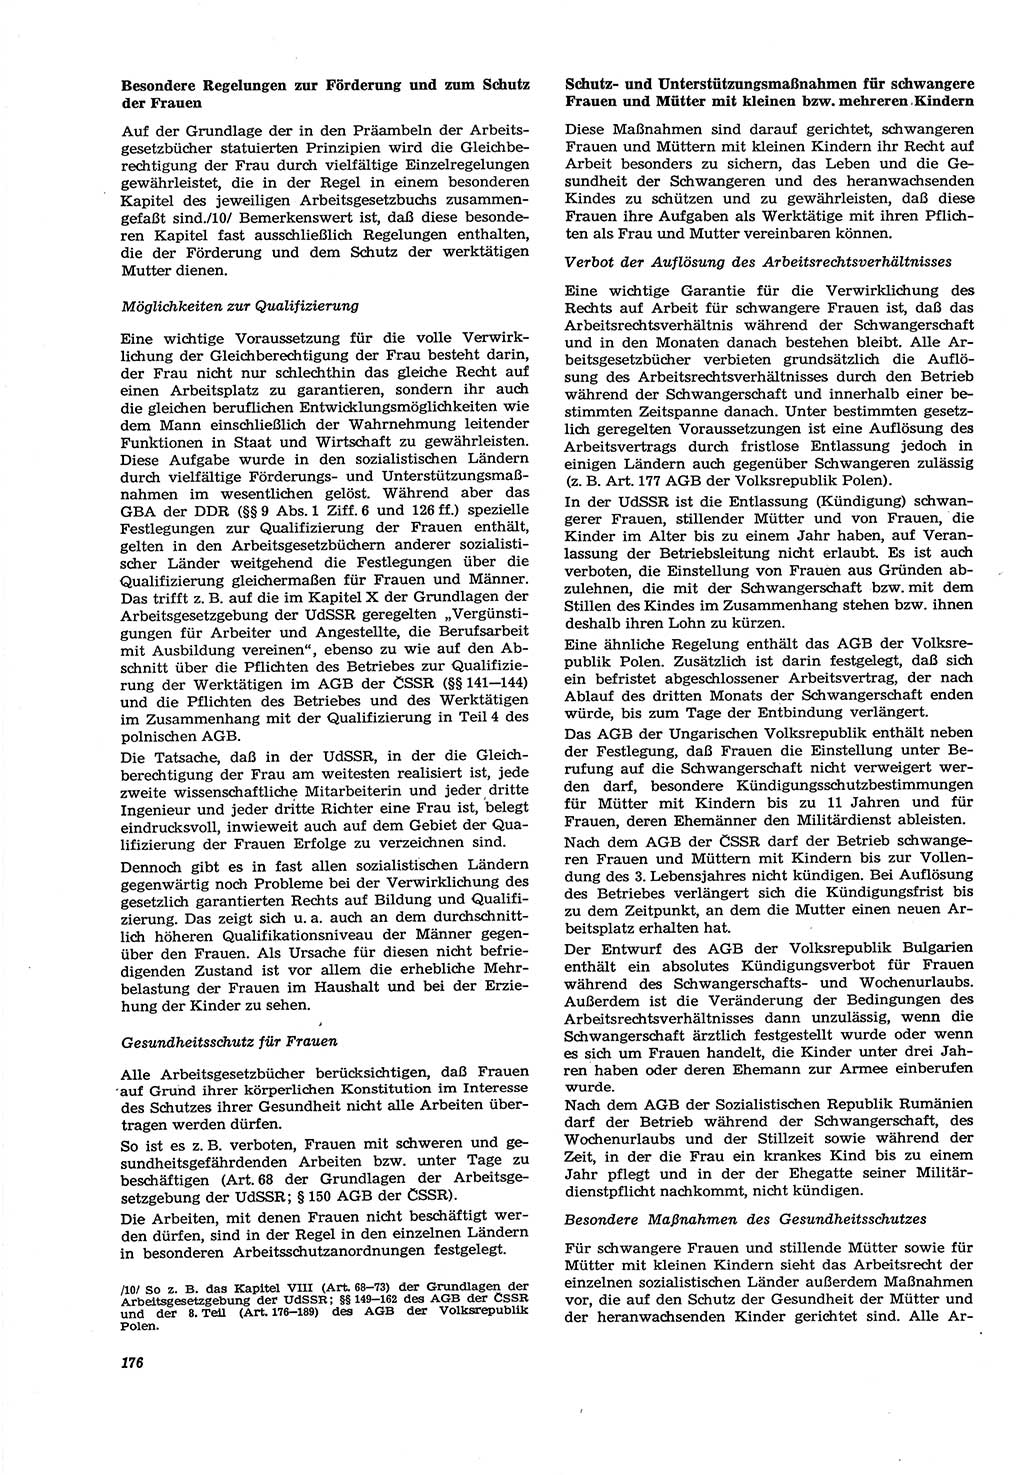 Neue Justiz (NJ), Zeitschrift für Recht und Rechtswissenschaft [Deutsche Demokratische Republik (DDR)], 30. Jahrgang 1976, Seite 176 (NJ DDR 1976, S. 176)